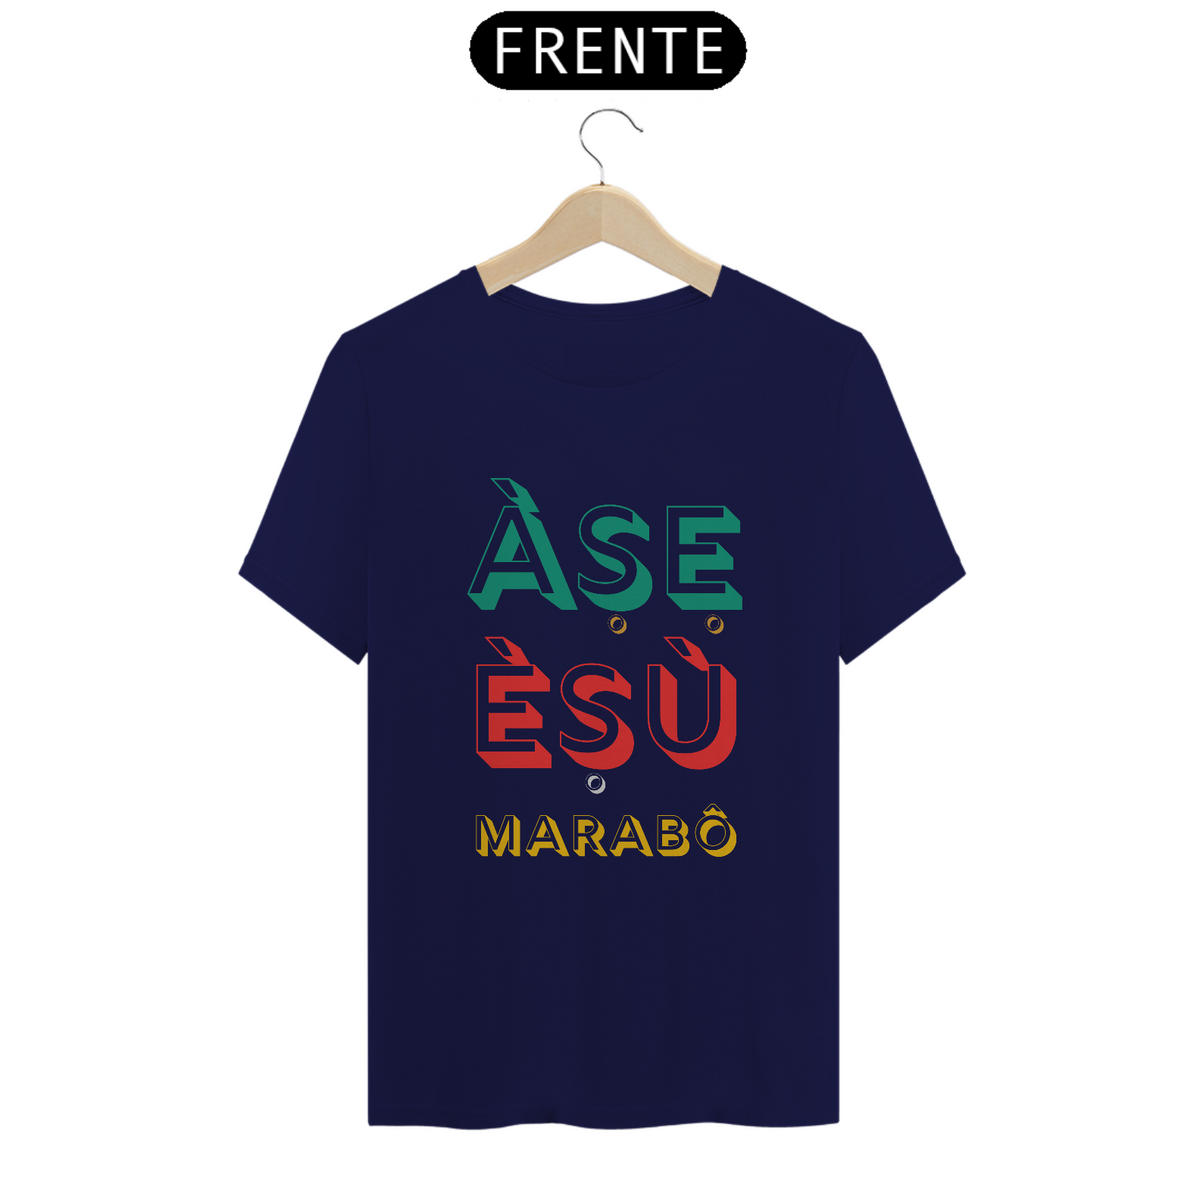 Nome do produto: Camiseta Esu Marabô 100% Algodão Fio 24.1, 145g costura simples e gola ribana